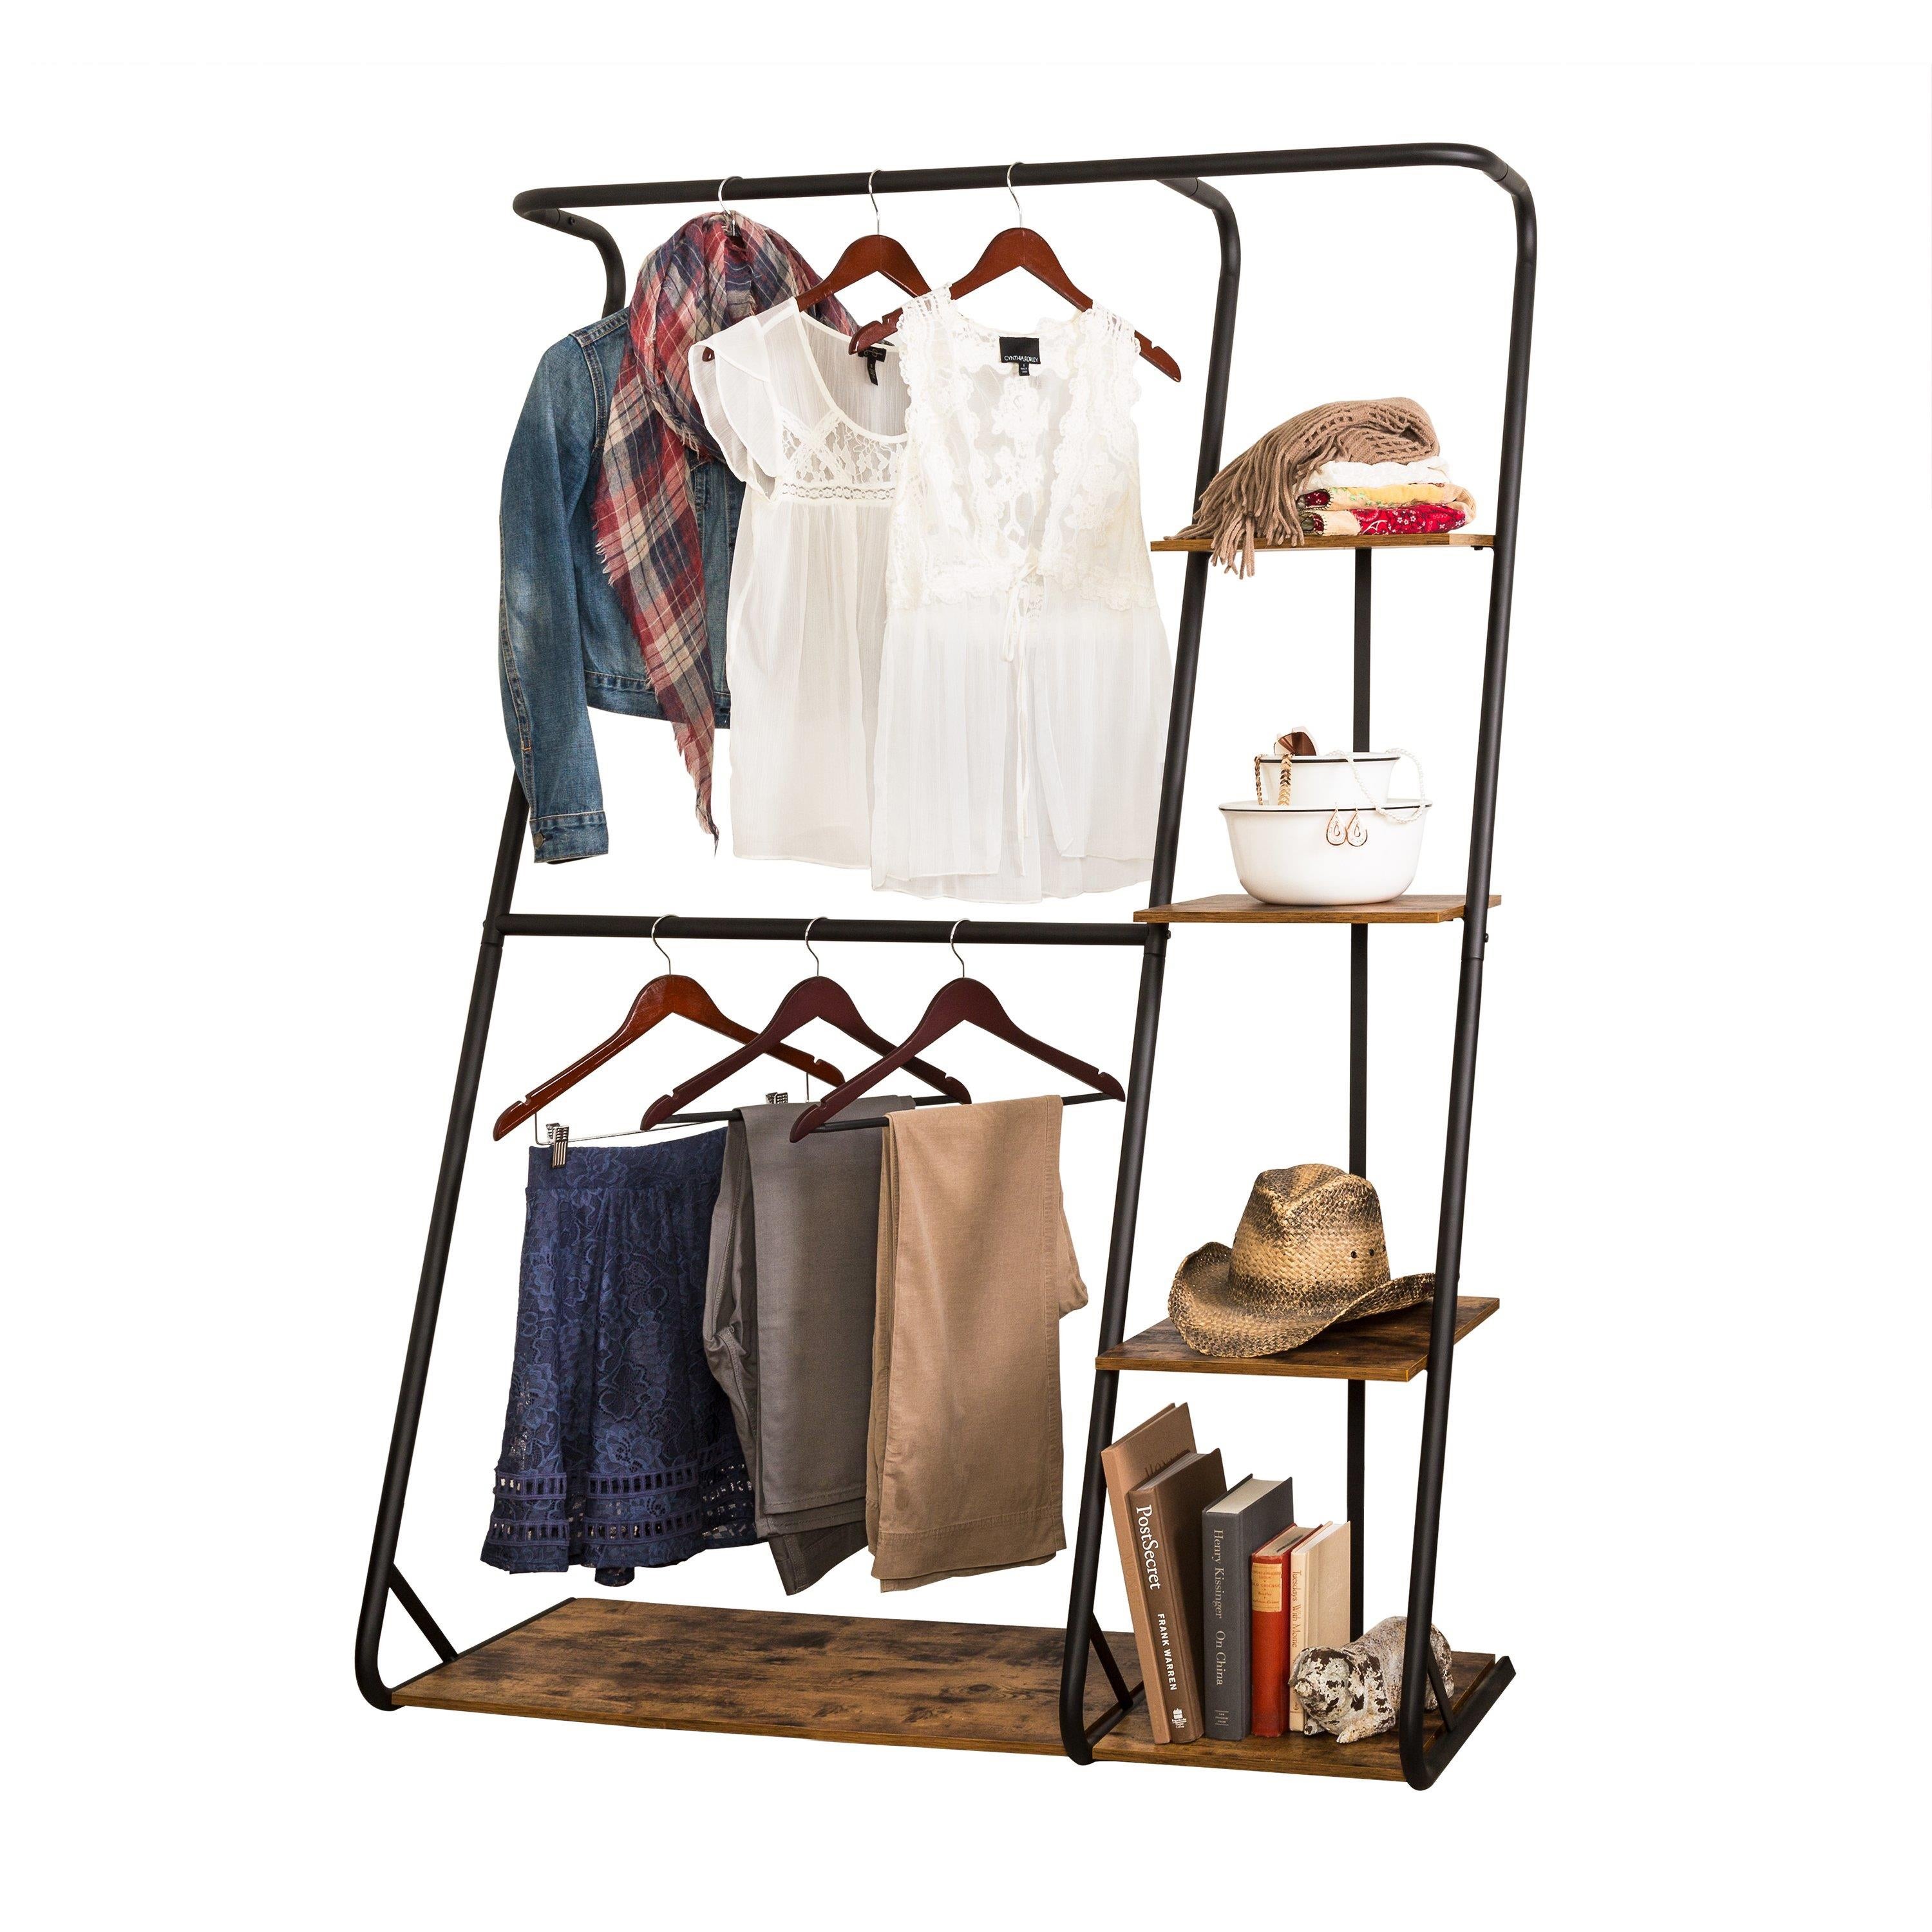 Rustic Z-Frame Open Wardrobe w/ Shelves